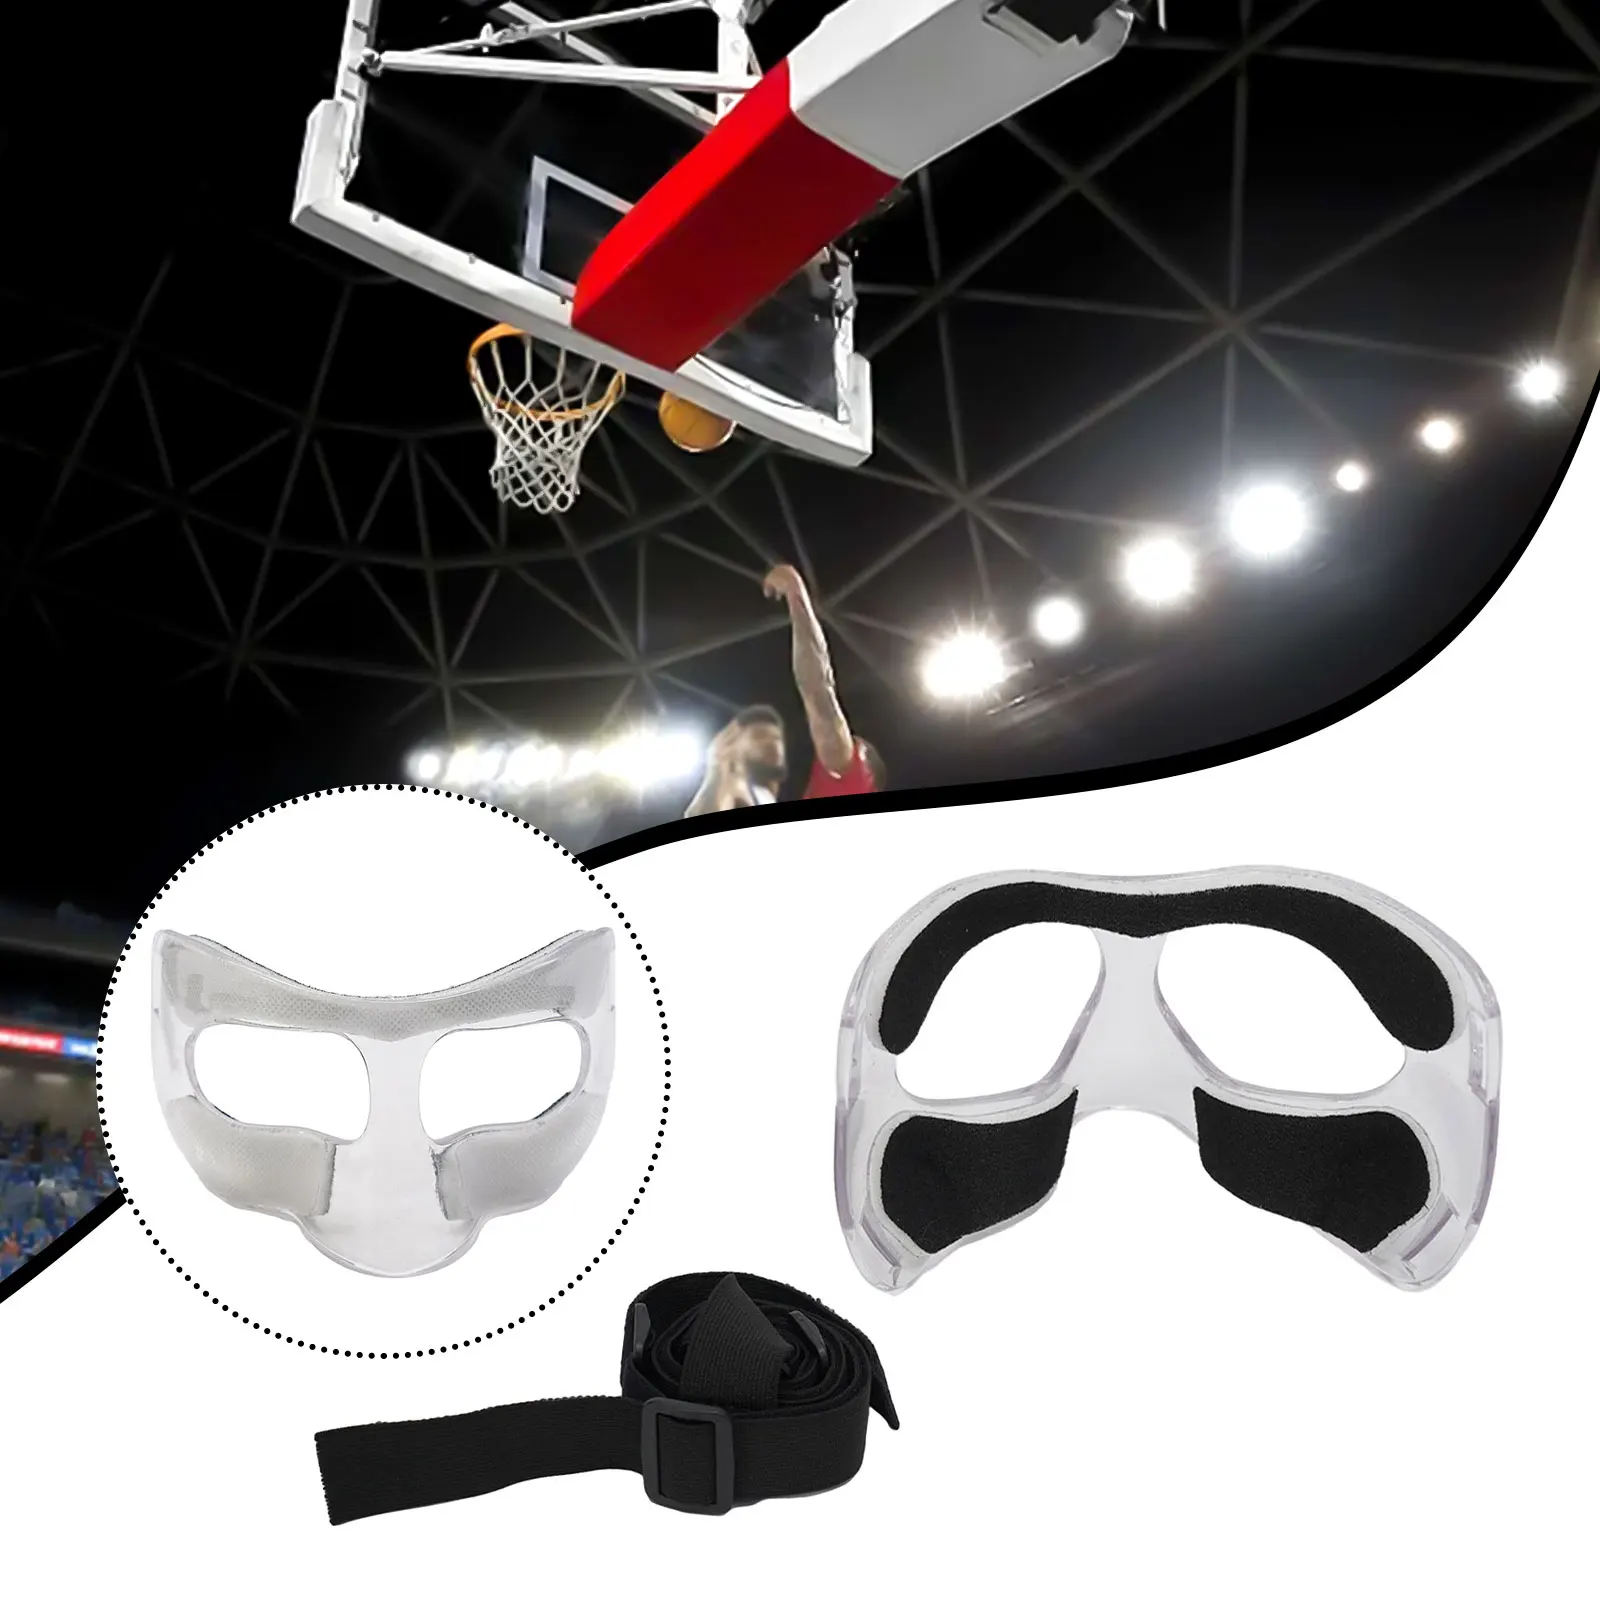 

Баскетбольная защита для носа, регулируемая защита от столкновений, прозрачная с накладкой, баскетбольная защита для лица, прочная защита для носа